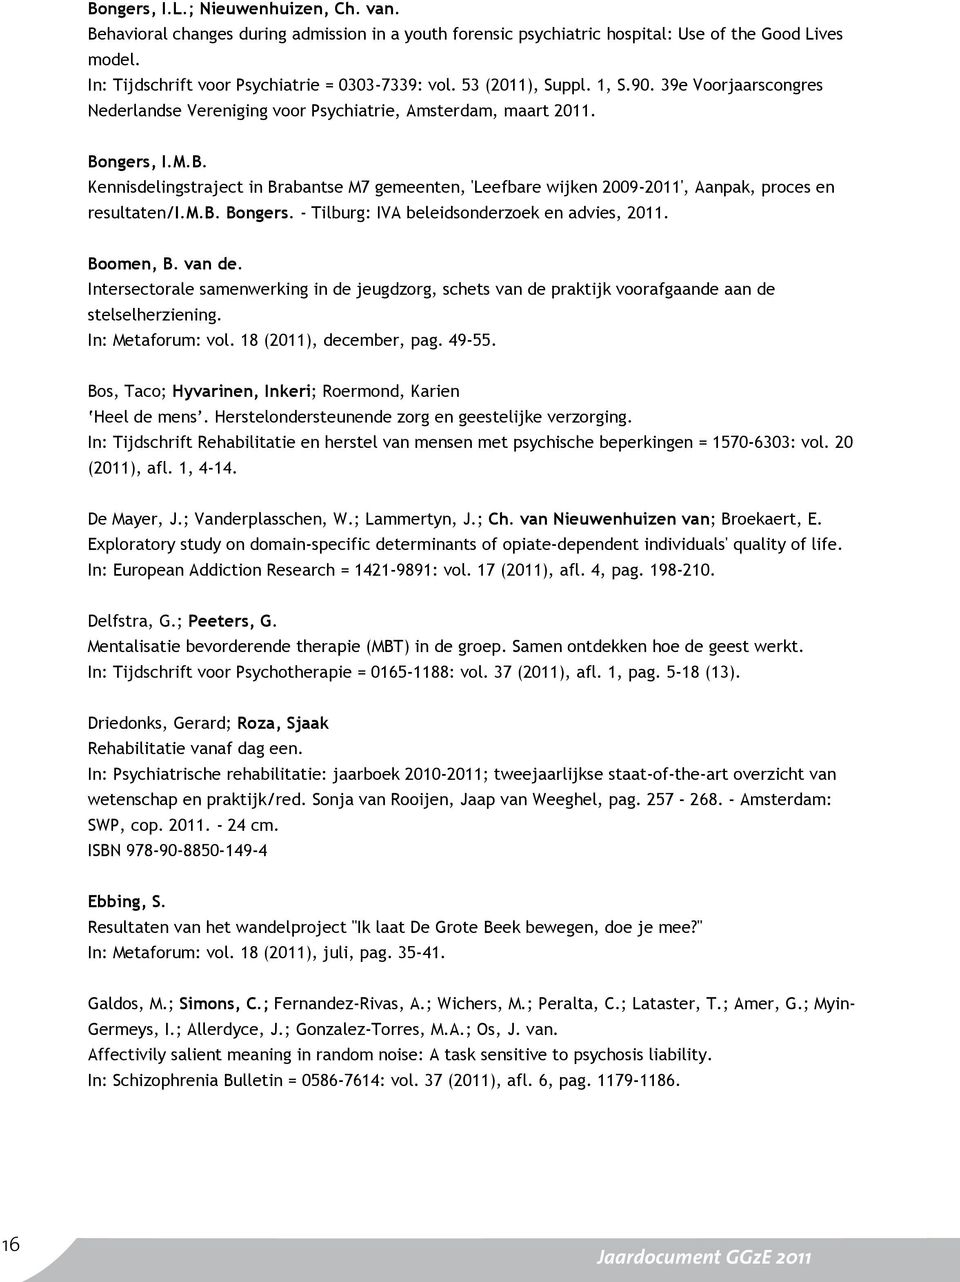 ngers, I.M.B. Kennisdelingstraject in Brabantse M7 gemeenten, 'Leefbare wijken 2009-2011', Aanpak, proces en resultaten/i.m.b. Bongers. - Tilburg: IVA beleidsonderzoek en advies, 2011. Boomen, B.